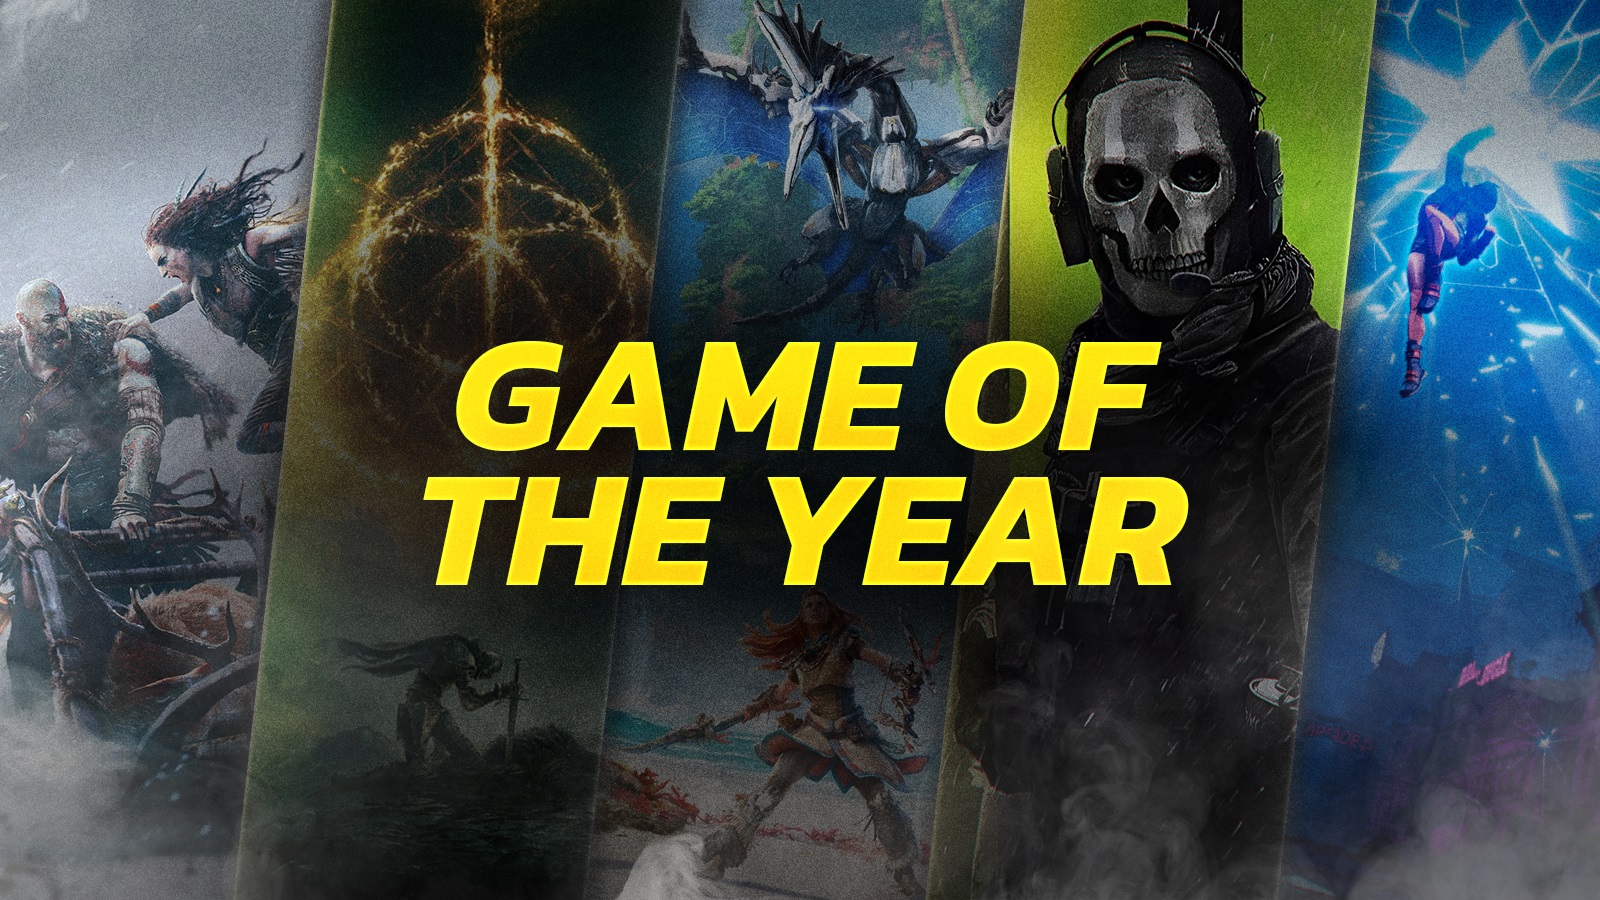 I 23 migliori videogiochi per PS5, da Baldur's Gate 3 a God of War:  Ragnarök